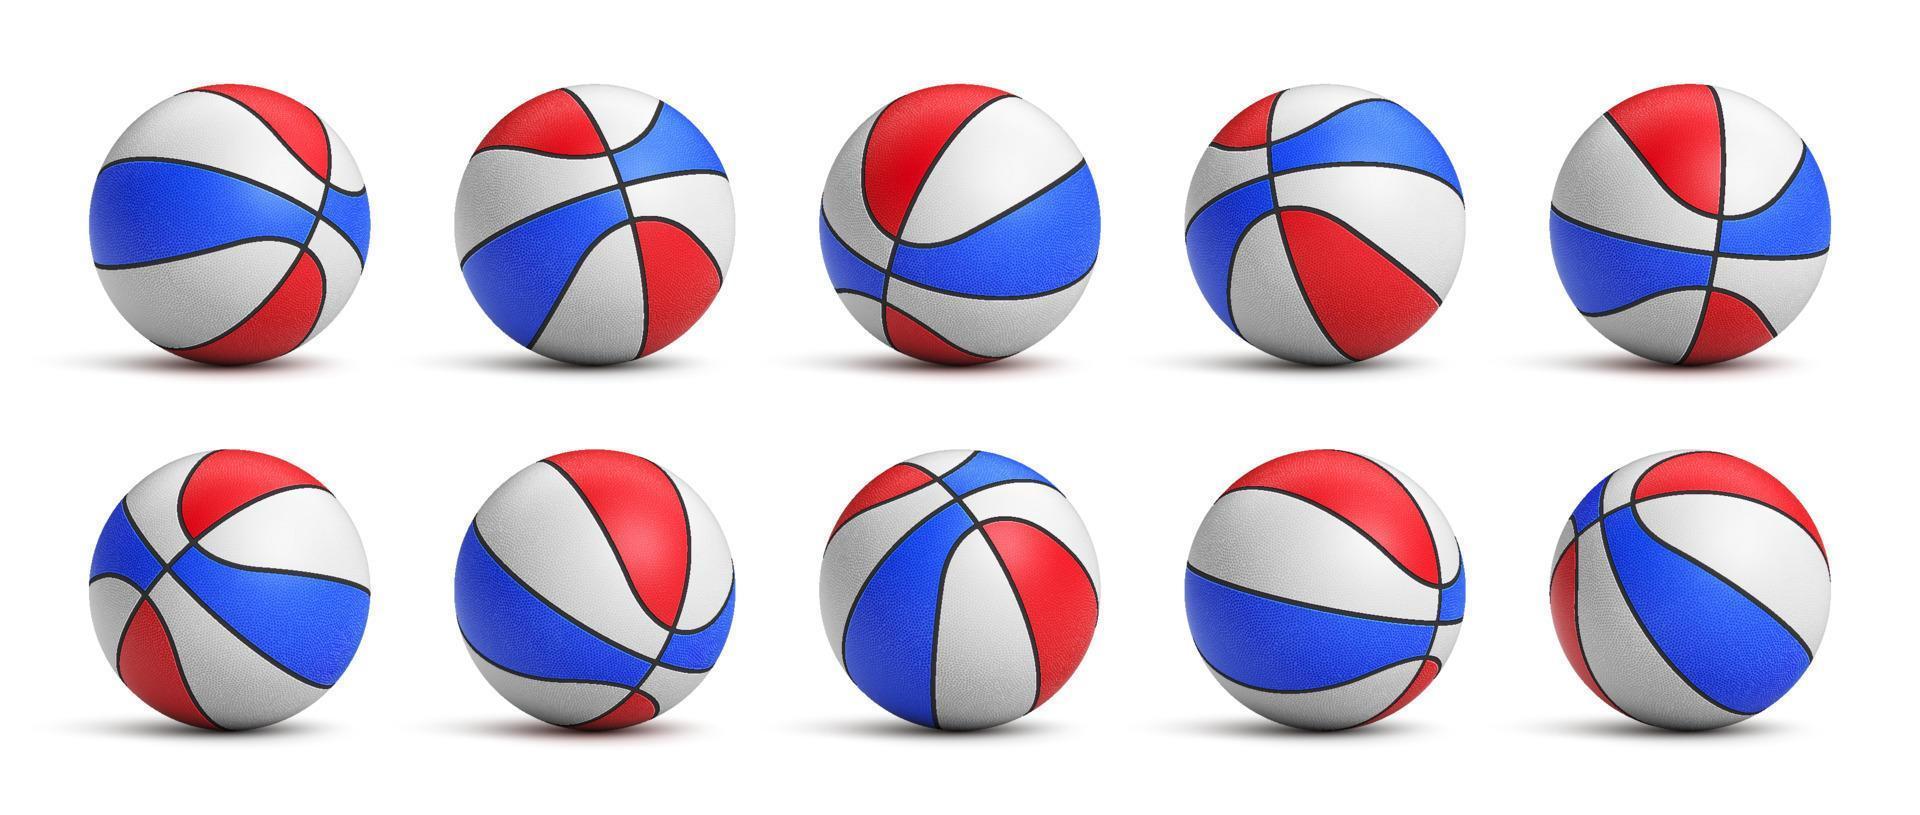 reeks van driekleur basketbal ballen met leer structuur in verschillend posities. realistisch vector illustratie